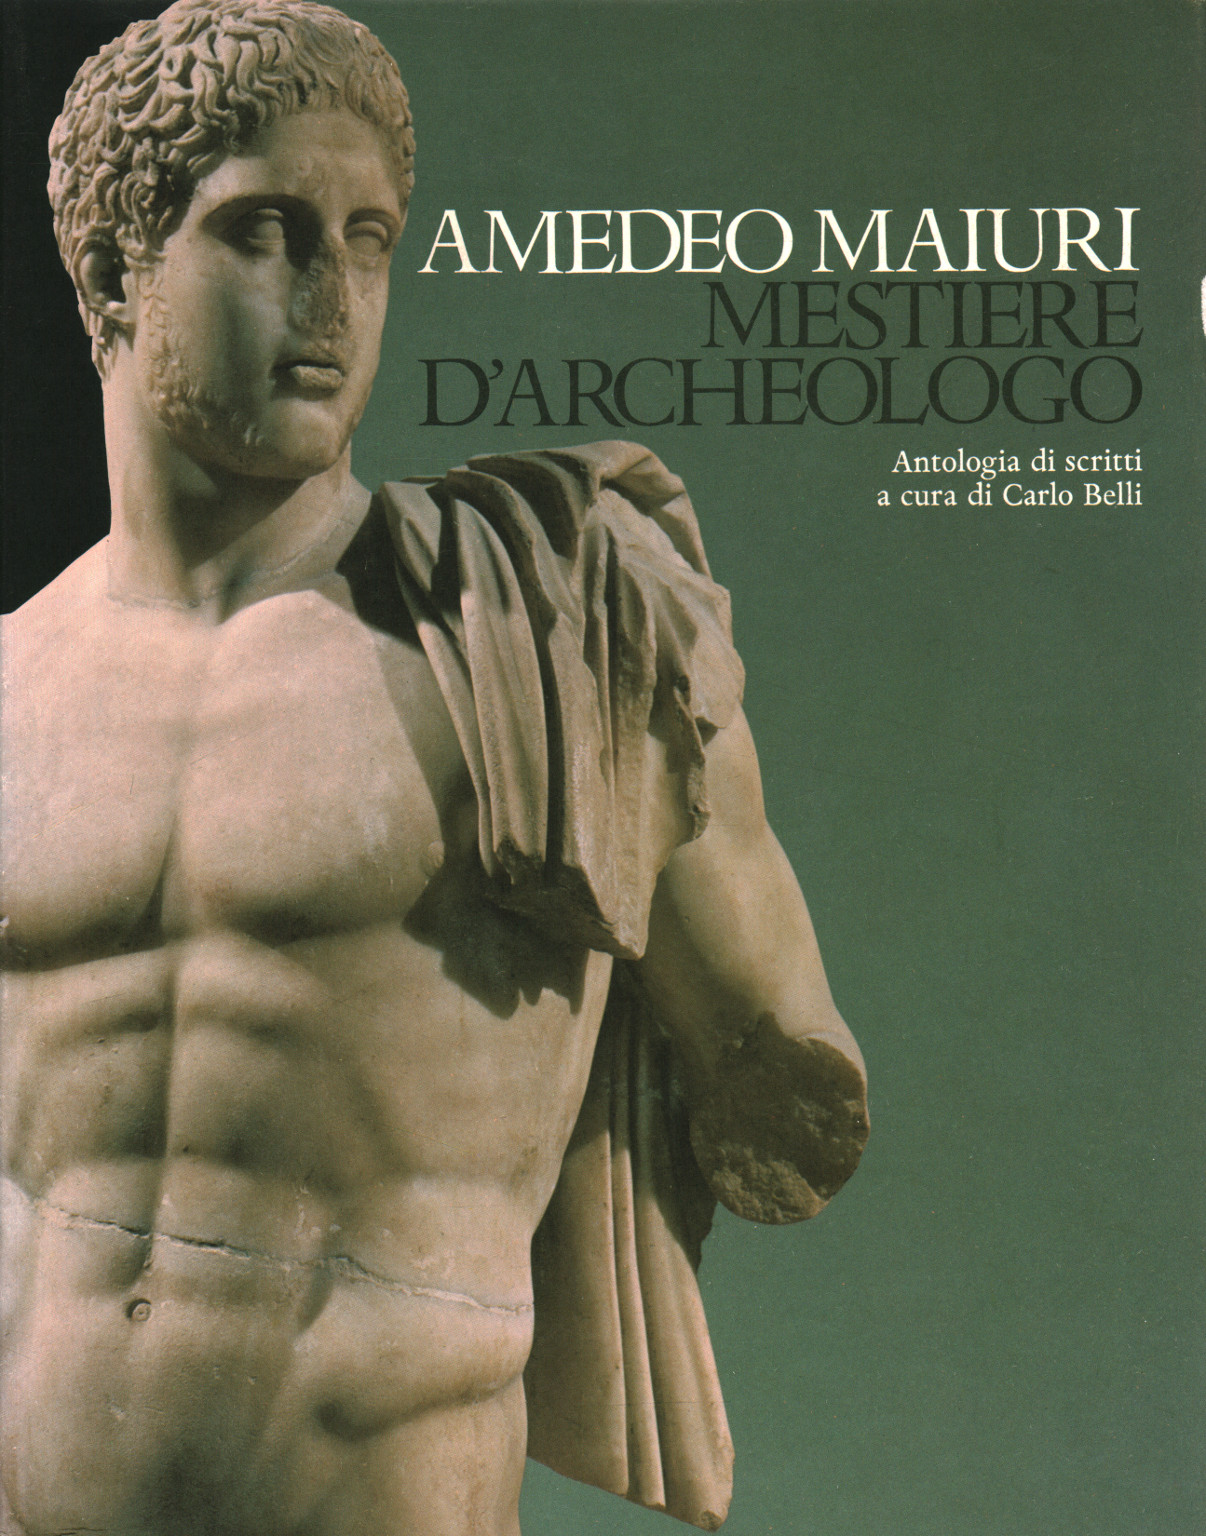 Amedeo Maiuri Archaeological profession